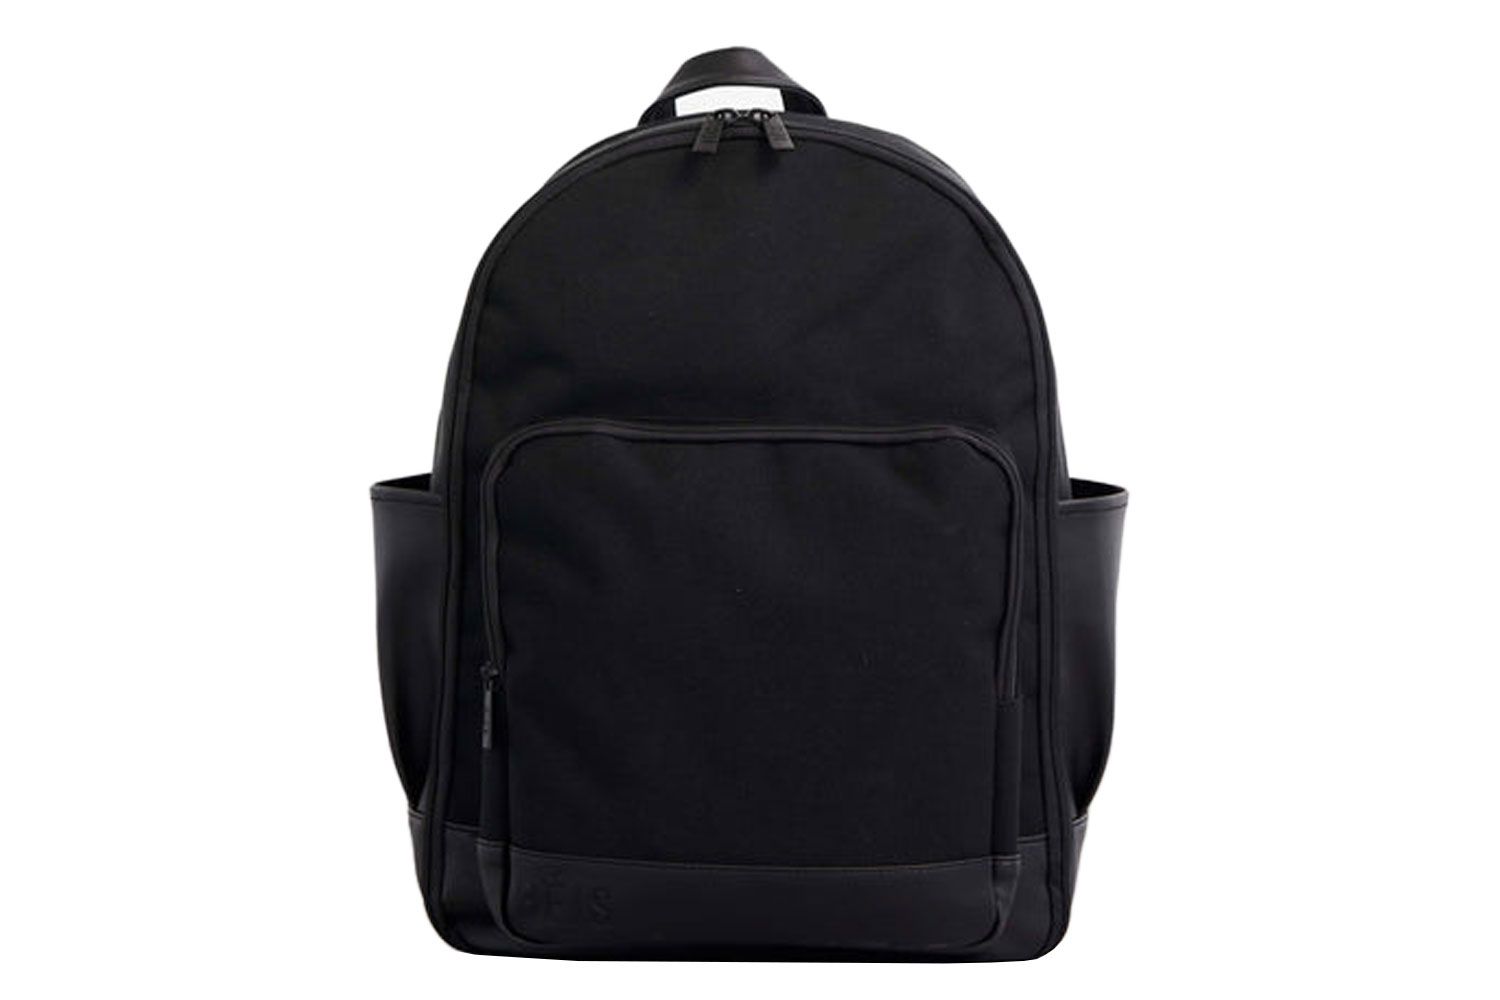 B&eacute;is The Backpack